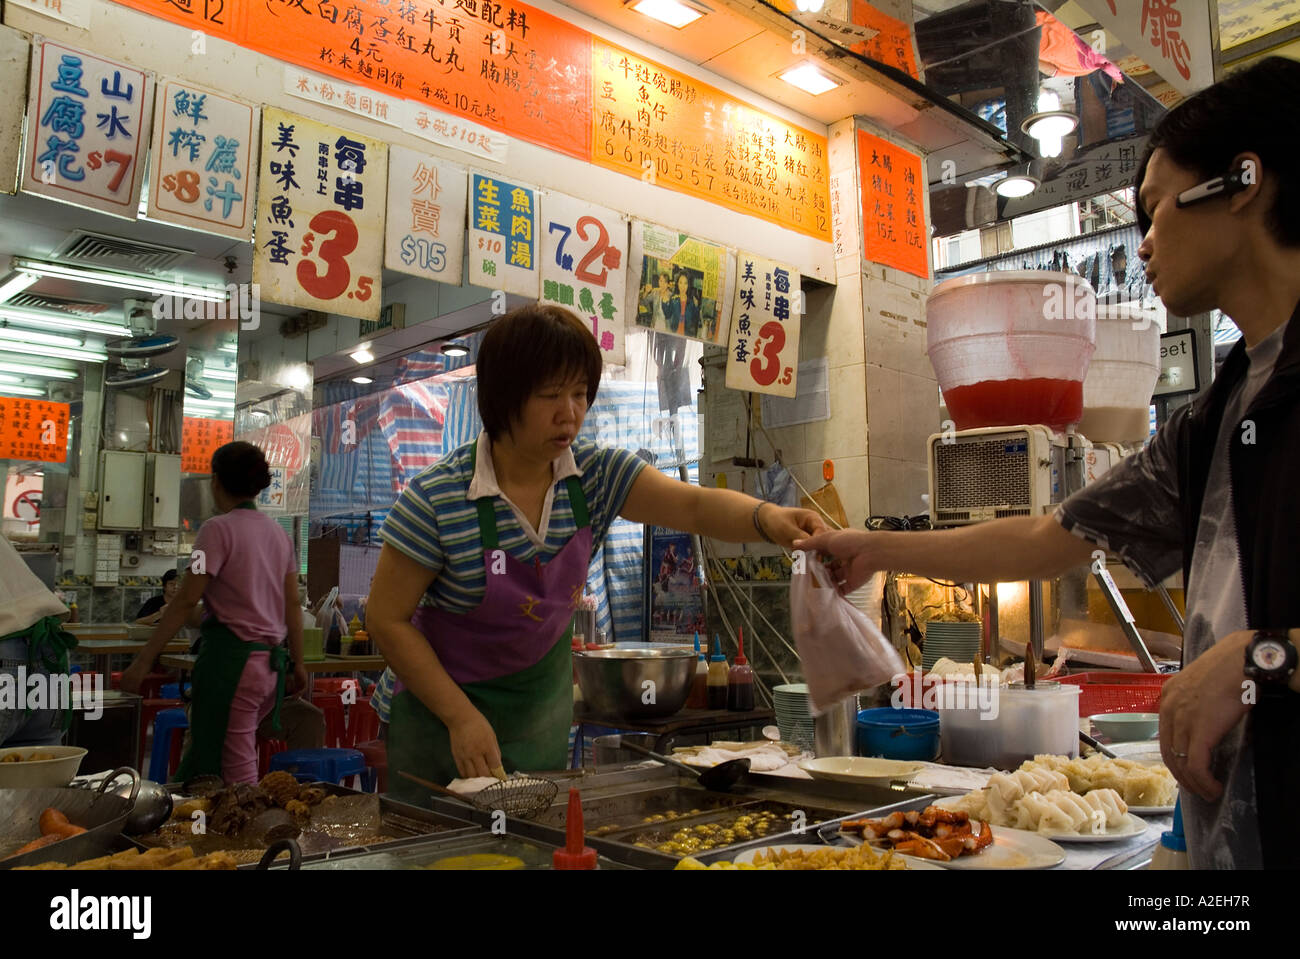 dh Fastfood Food Stall MONG KOK HONG KONG Kundenshop-Assistent bei Snack-Kauf hk chinesen asiatische Fastfood-Bestellung Stockfoto